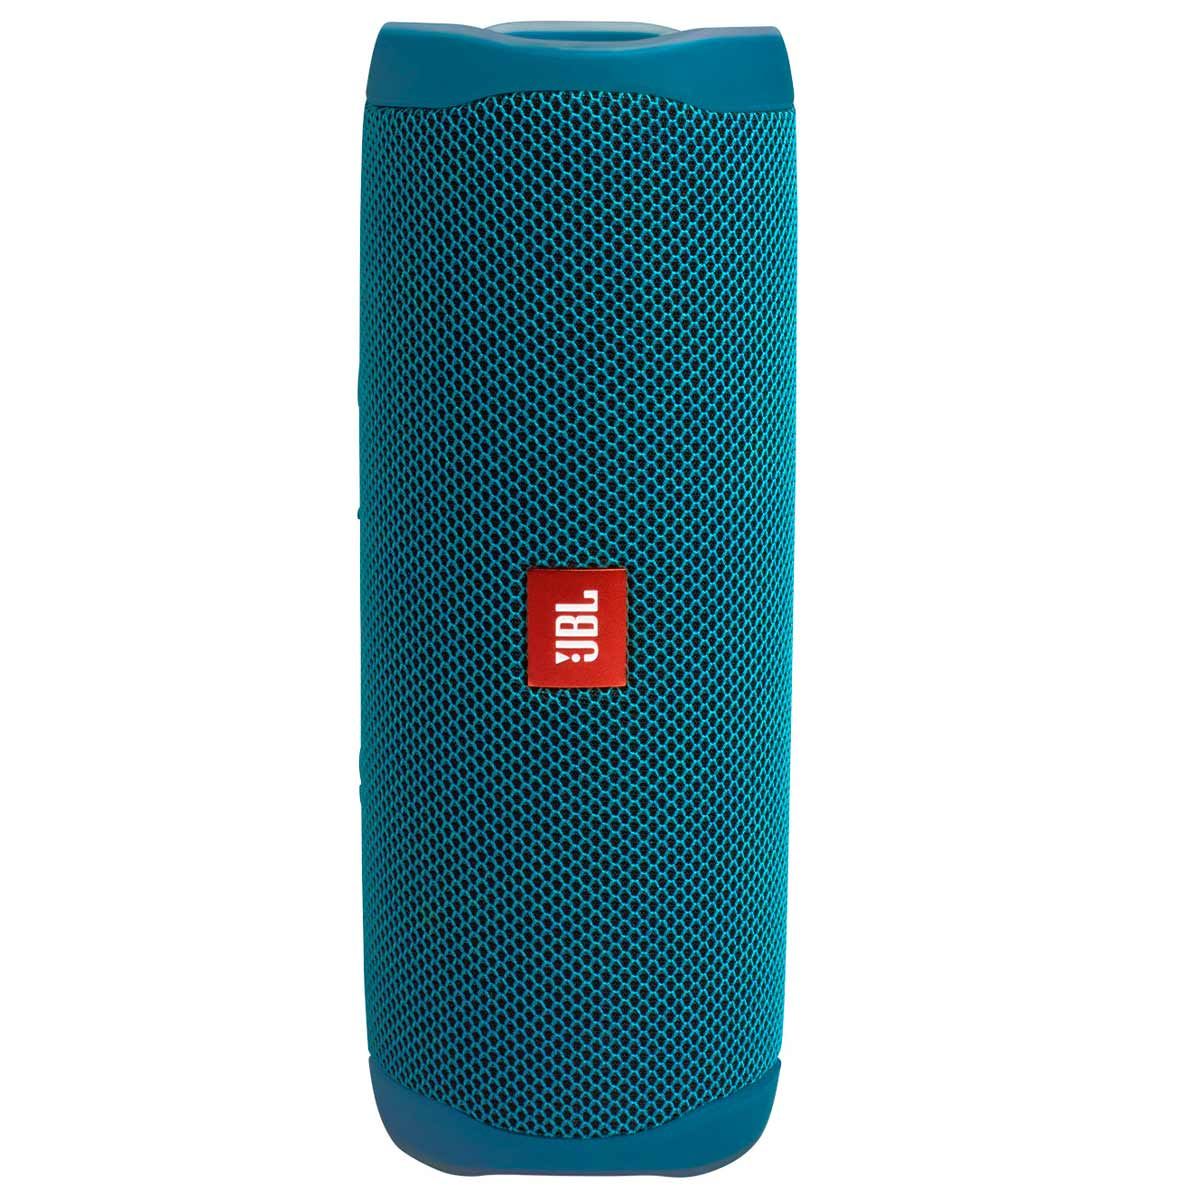 Angled view JBL Flip 5 Eco Edition Waterproof Bluetooth Speaker - Ocean Blue standing on end